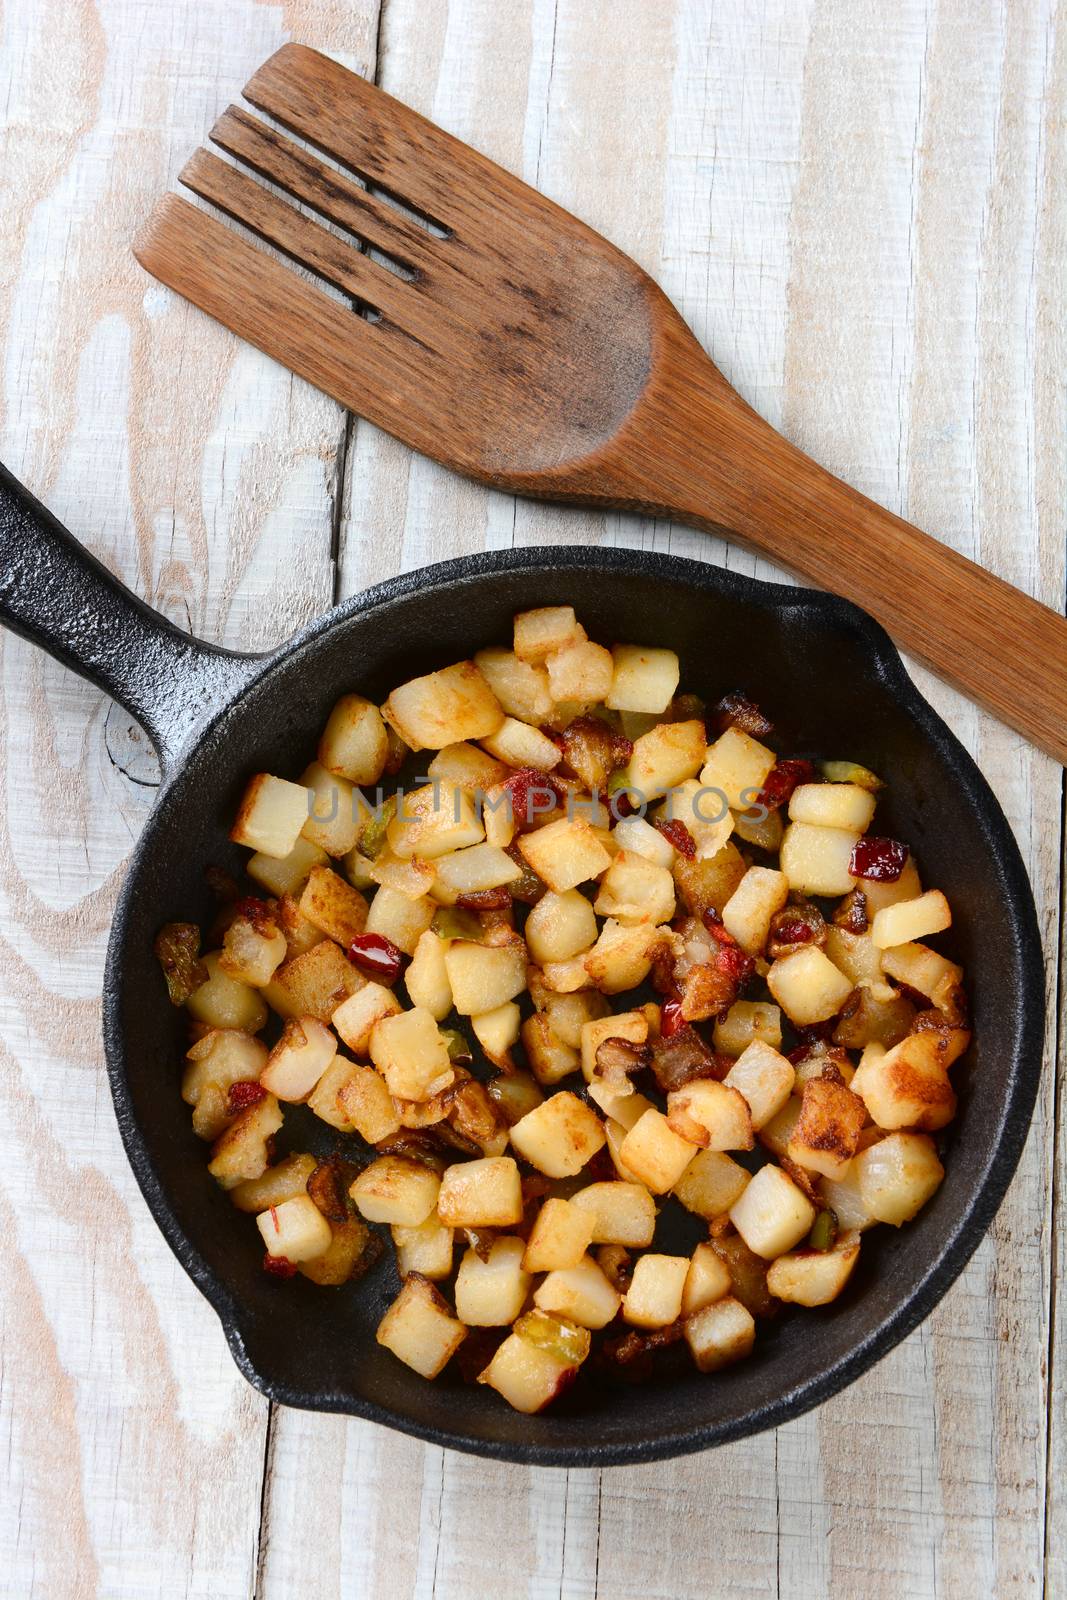 Fried Breakfast Potatoes by sCukrov